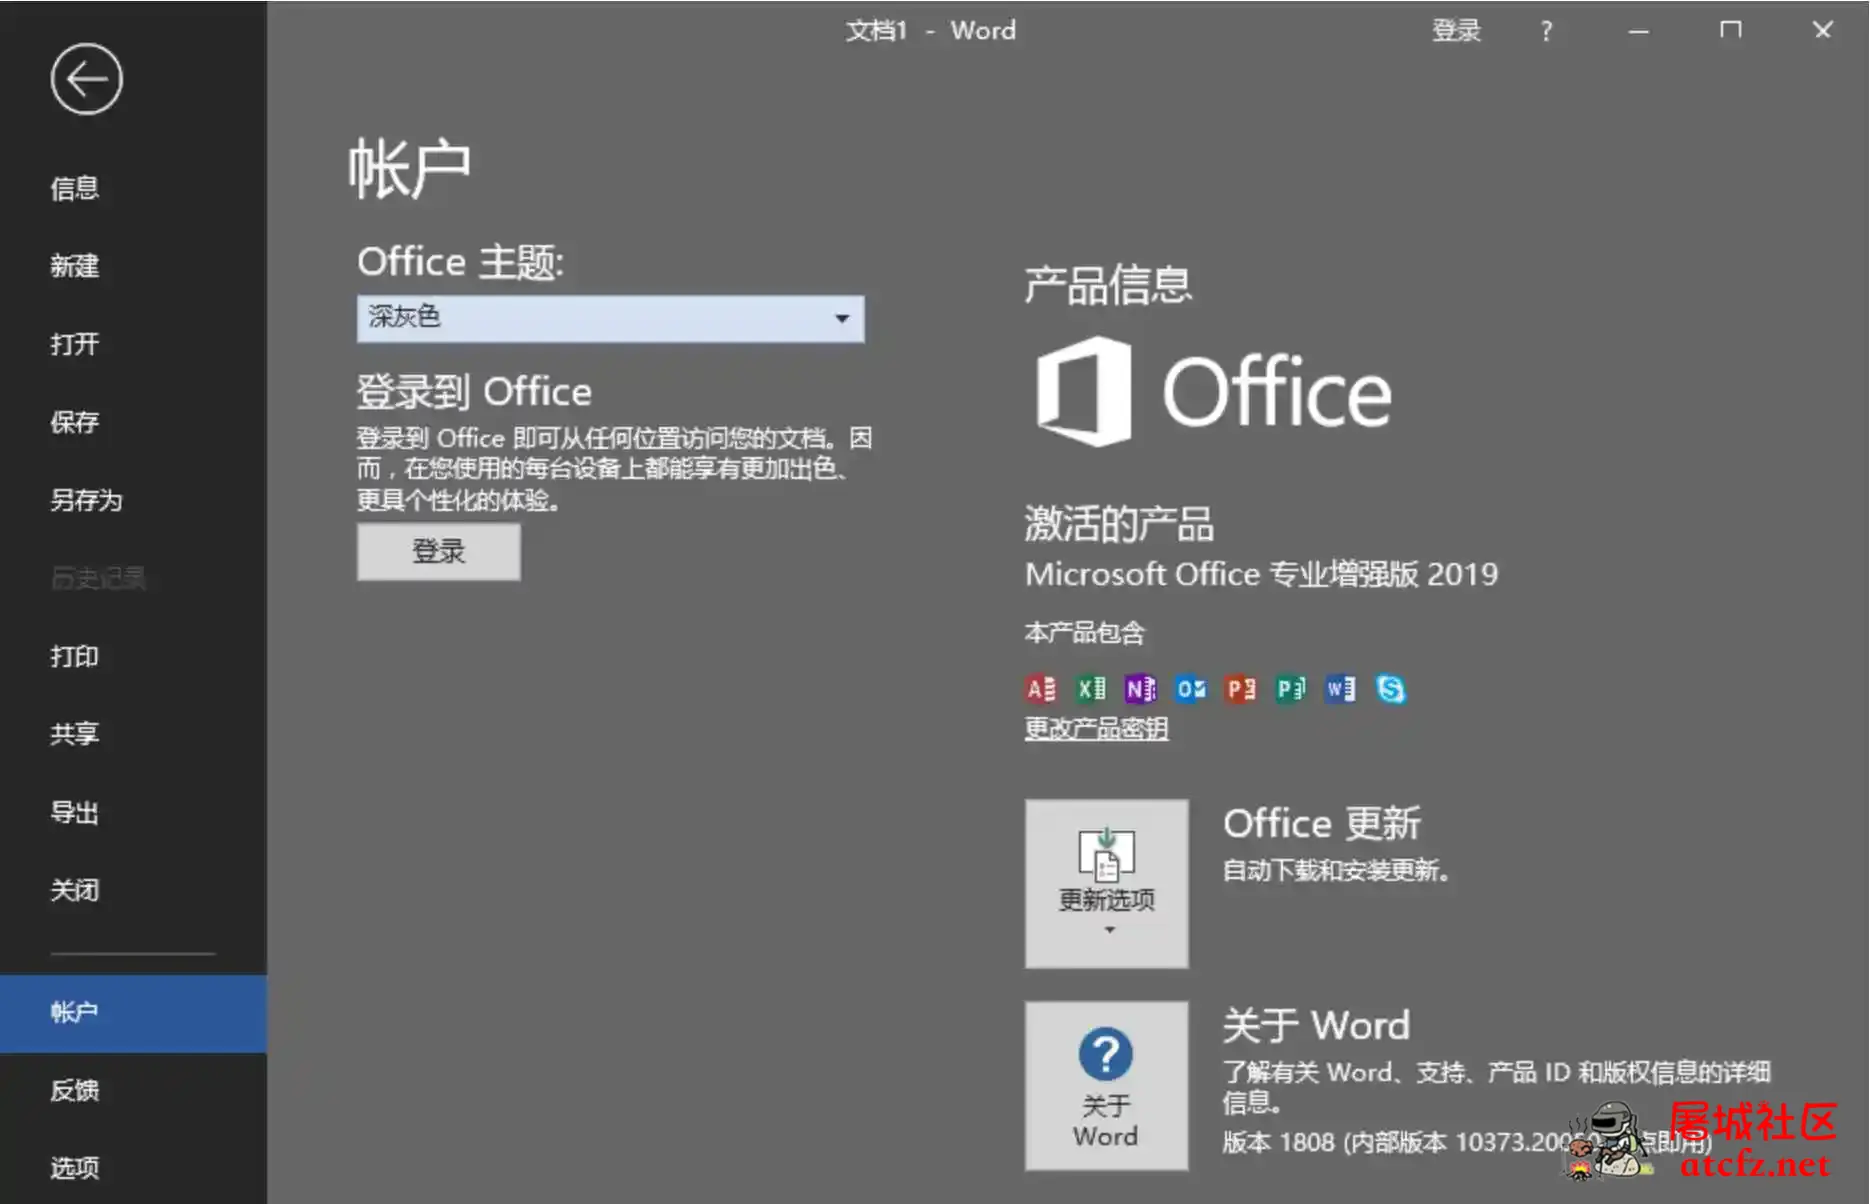 微软Office2019批量授权版批量授权商业版工具 屠城辅助网www.tcfz1.com8393